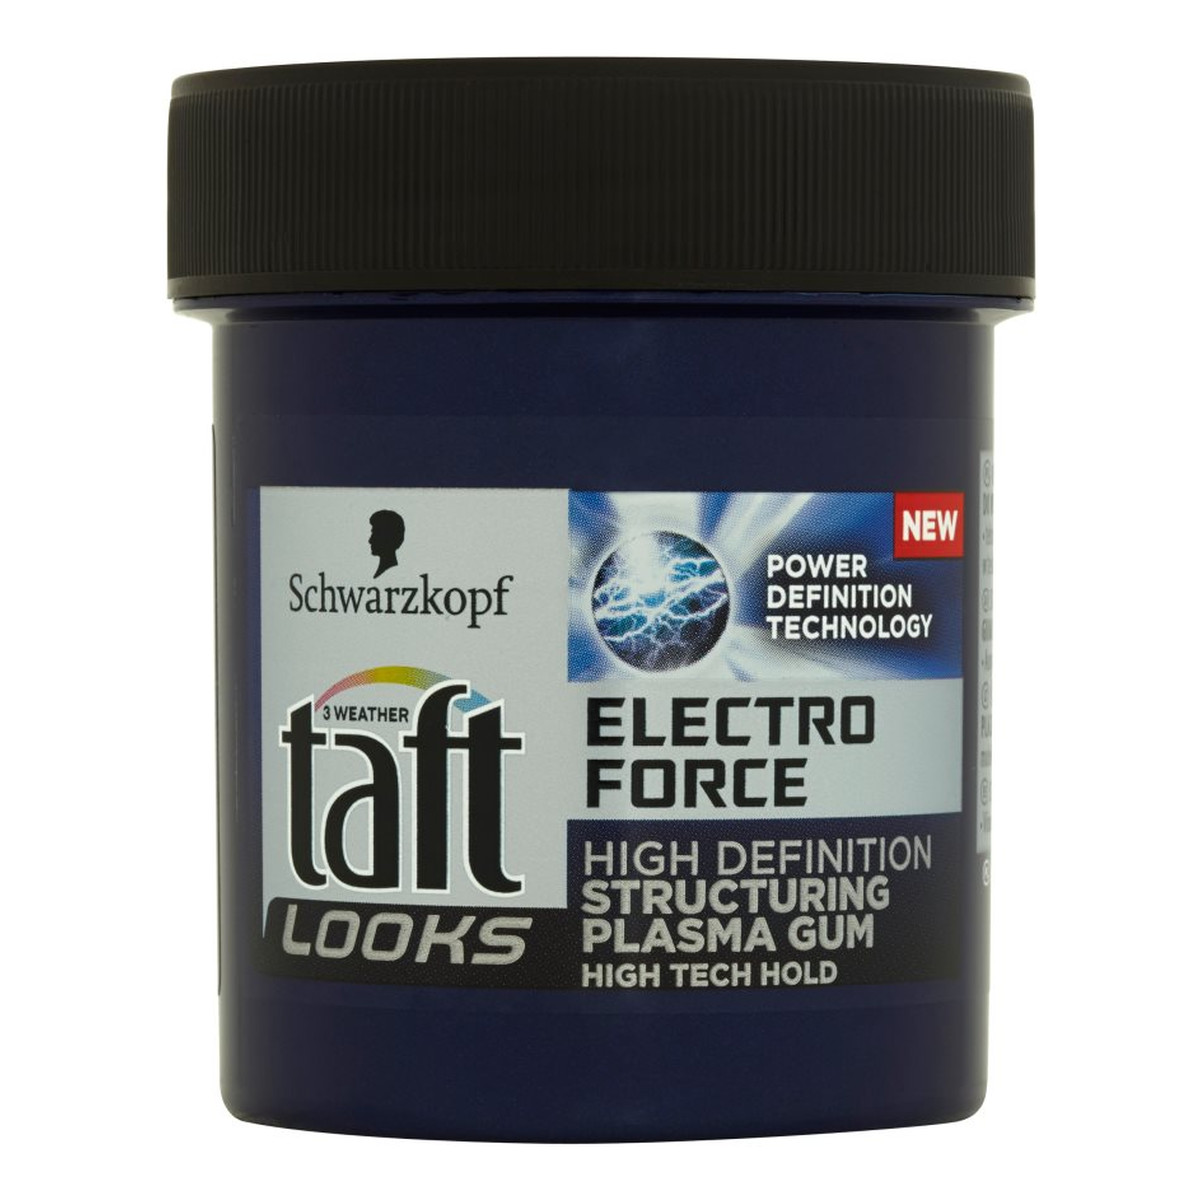 Taft Looks Electro Force Guma plazmowa do włosów 130ml